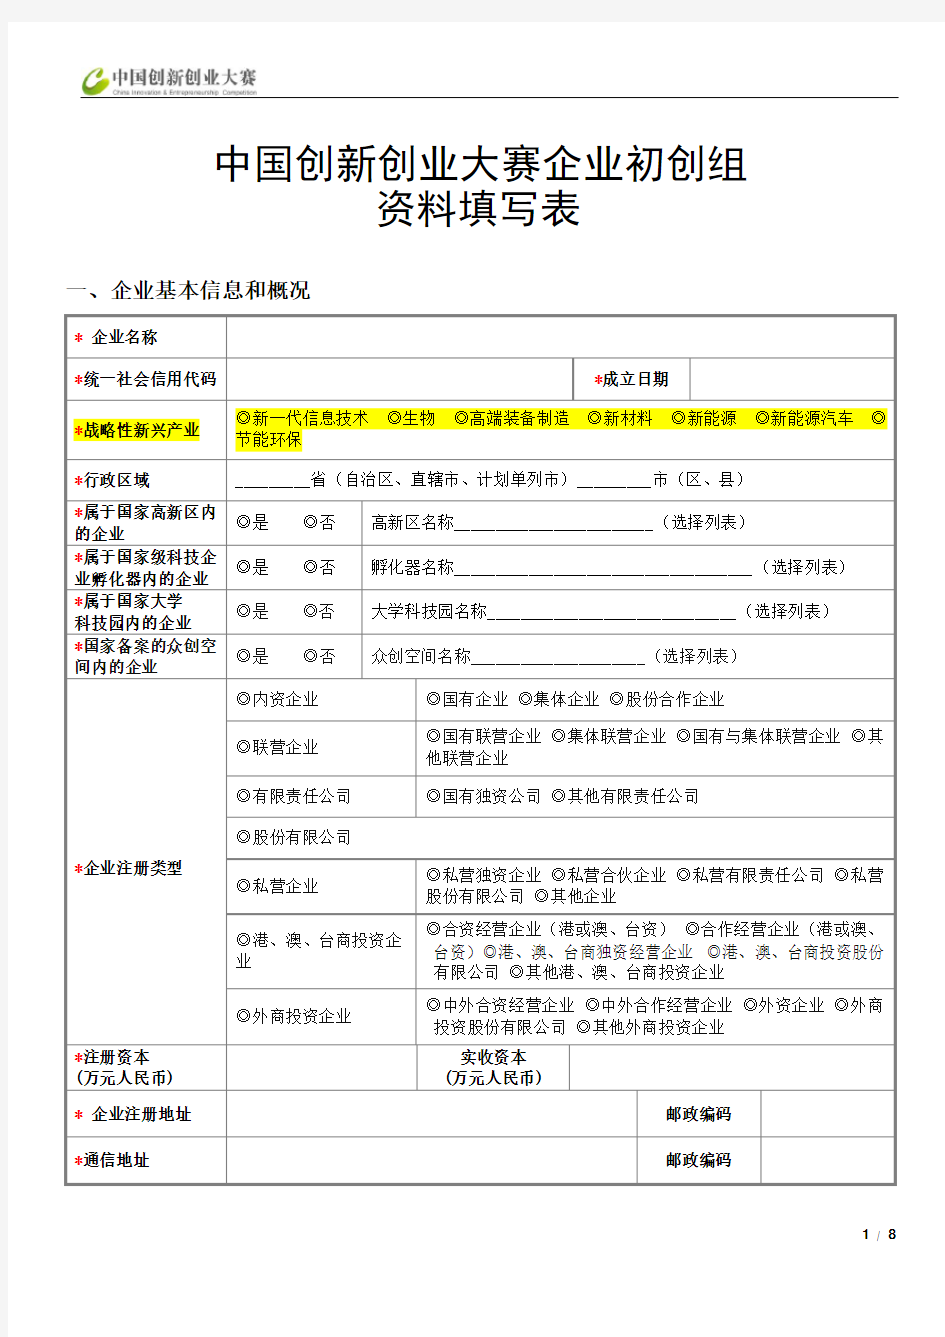 中国创新创业大赛初创组资料填写表